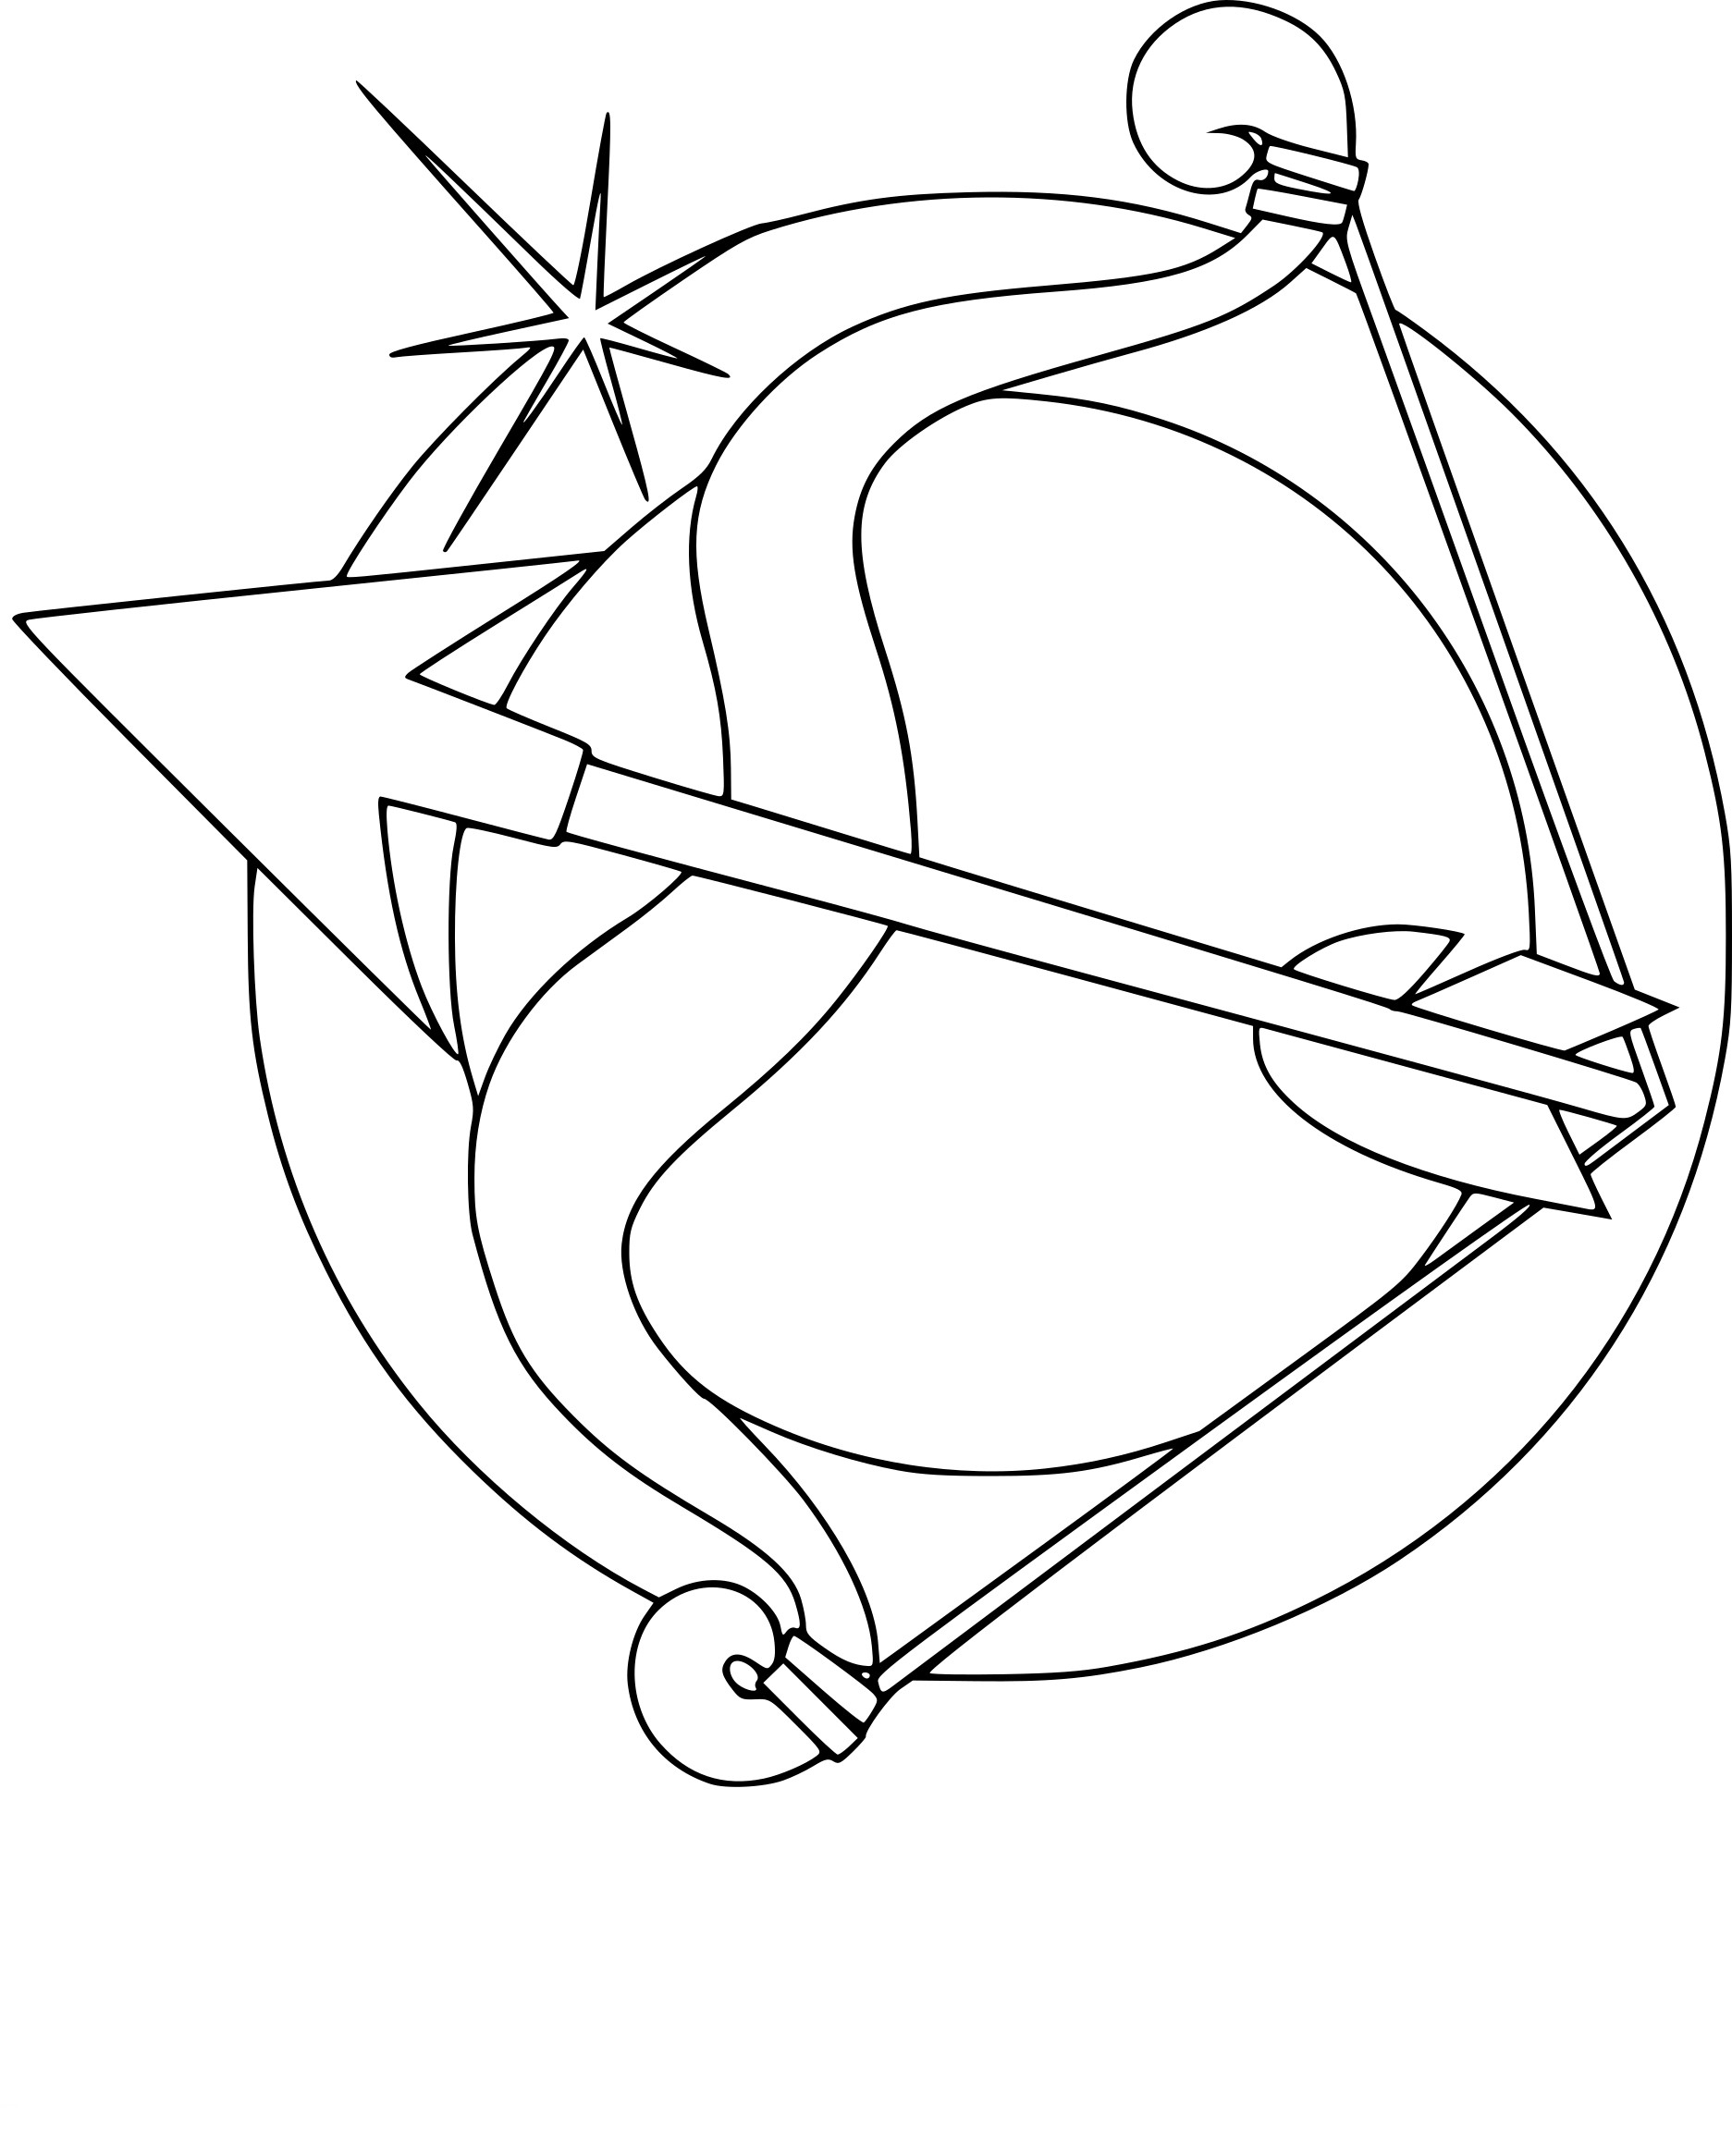 Как выглядит знак зодиака Стрелец? Как нарисовать знак зодиака Стрелец?